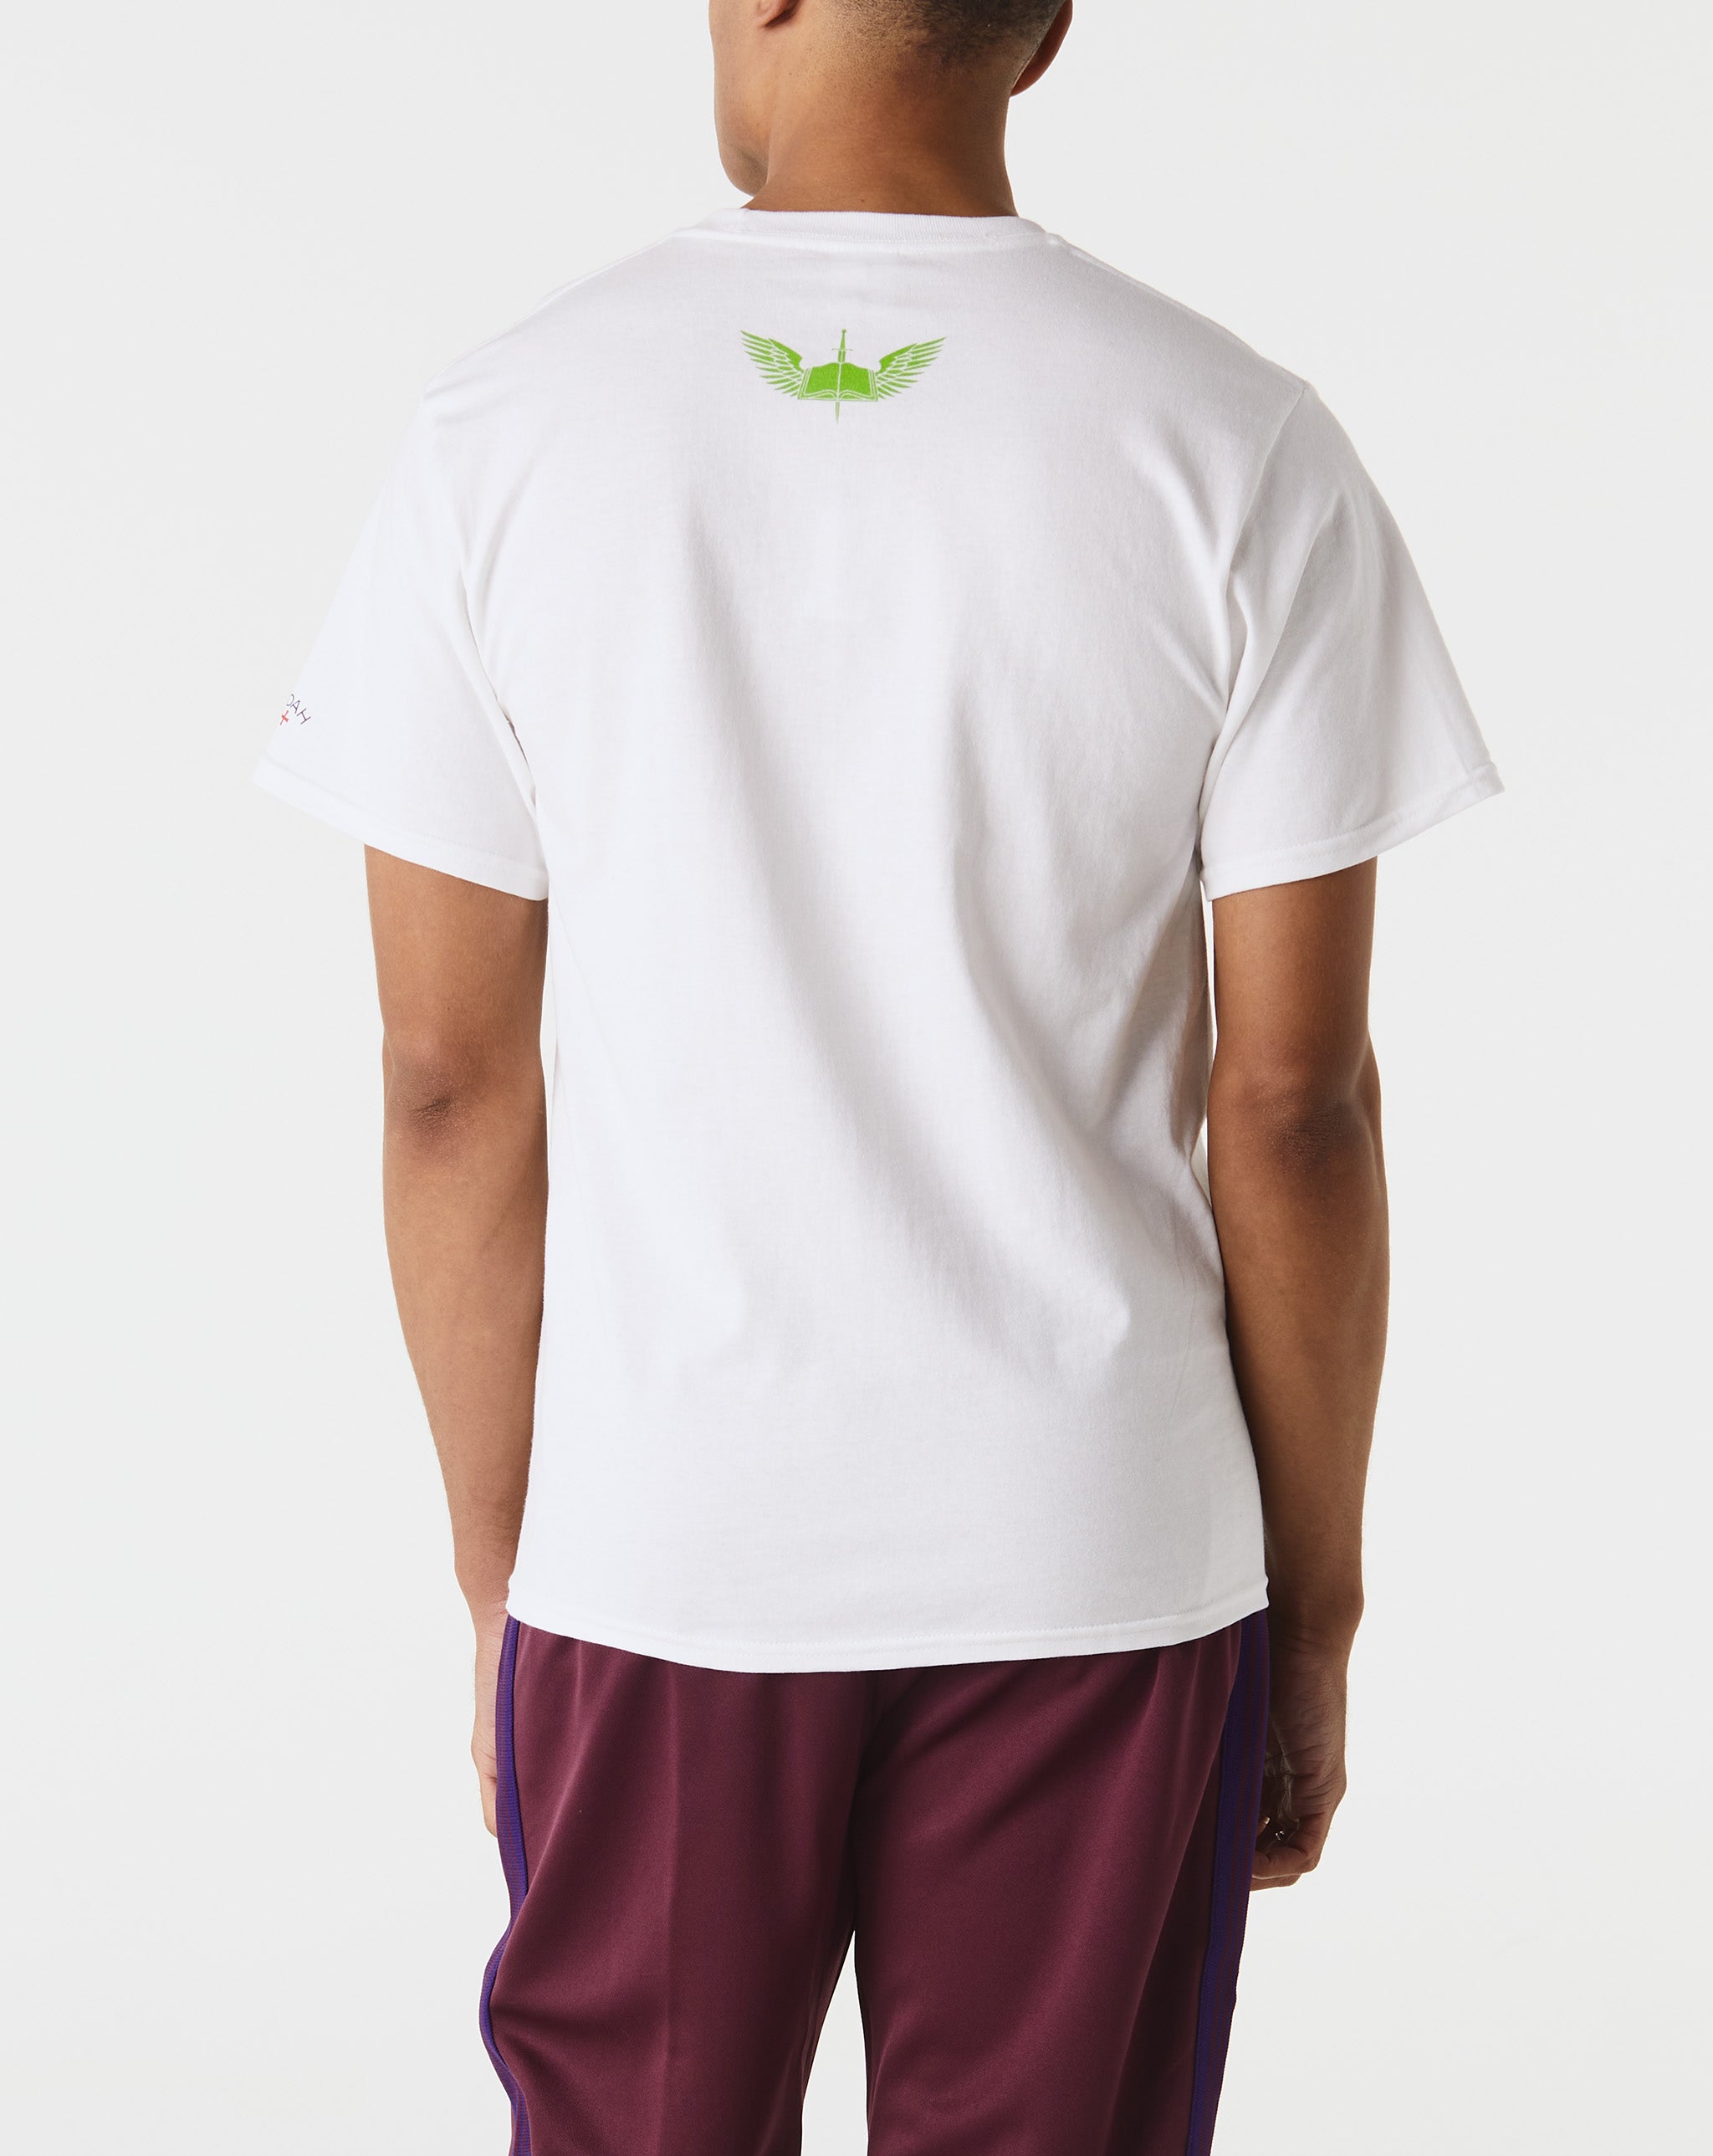 Noah Wrangler T-shirt nera con logo circolare  - Cheap Urlfreeze Jordan outlet